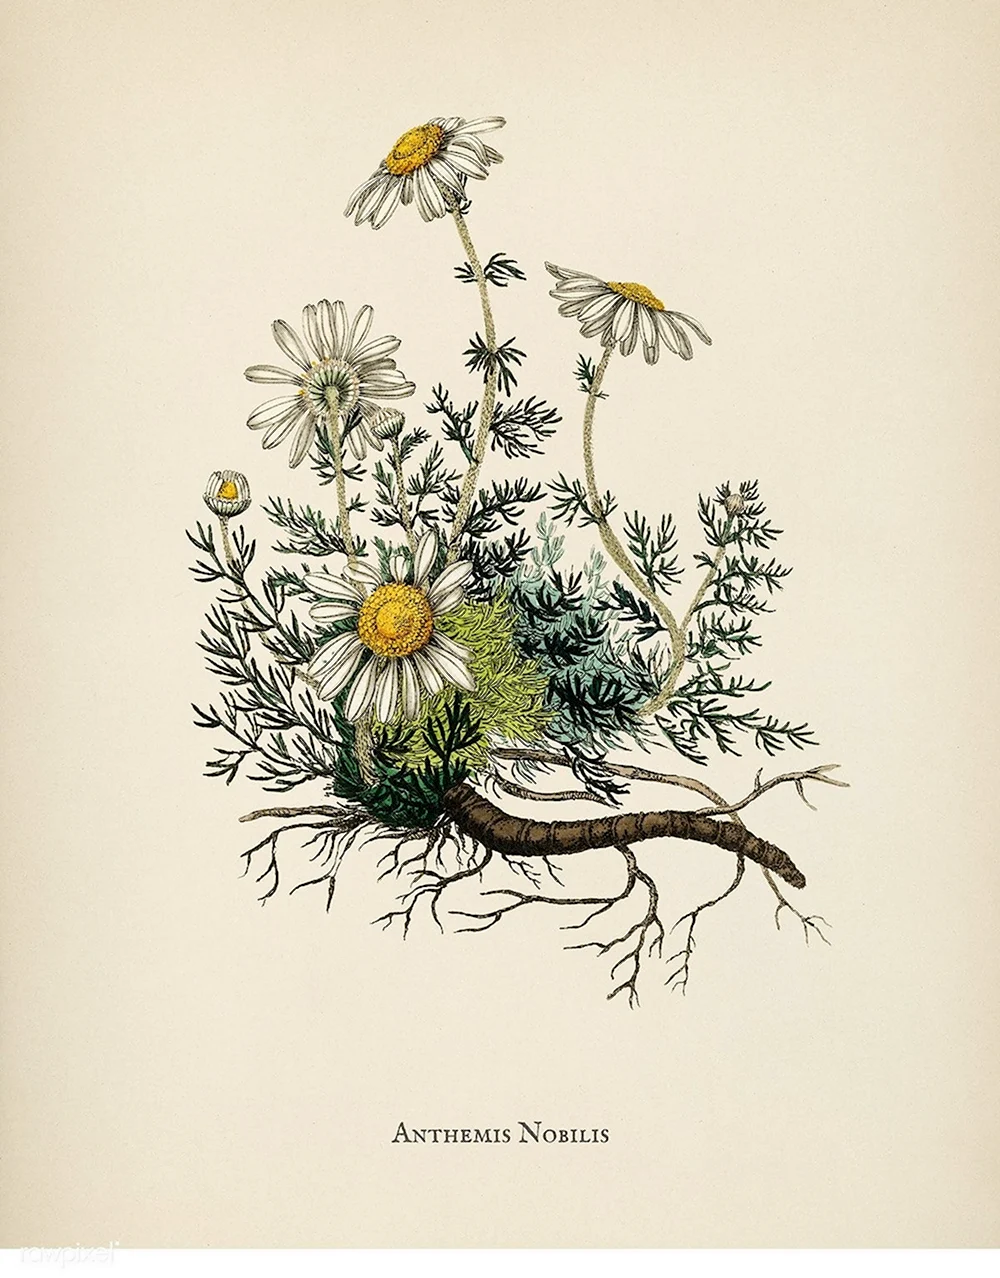 Гербарии трав Ботанические иллюстрации